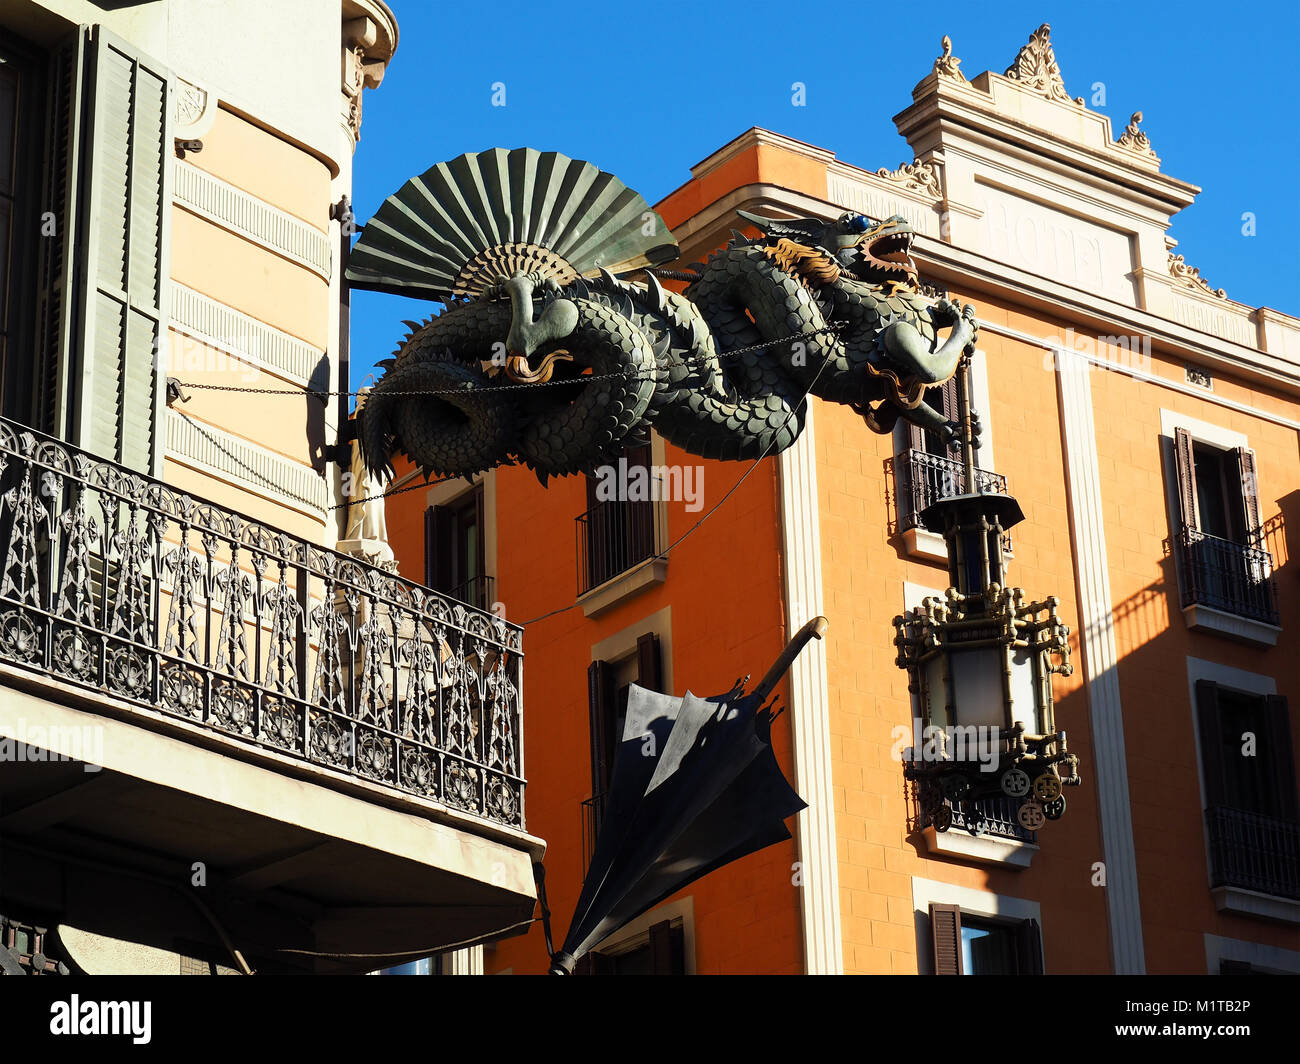 Chinesische Drachen Detail in Barcelona, Spanien. Chinesische Drachen ragen aus der Fassade des Hauses der Schirme in den Ramblas von Barcelona. Stockfoto